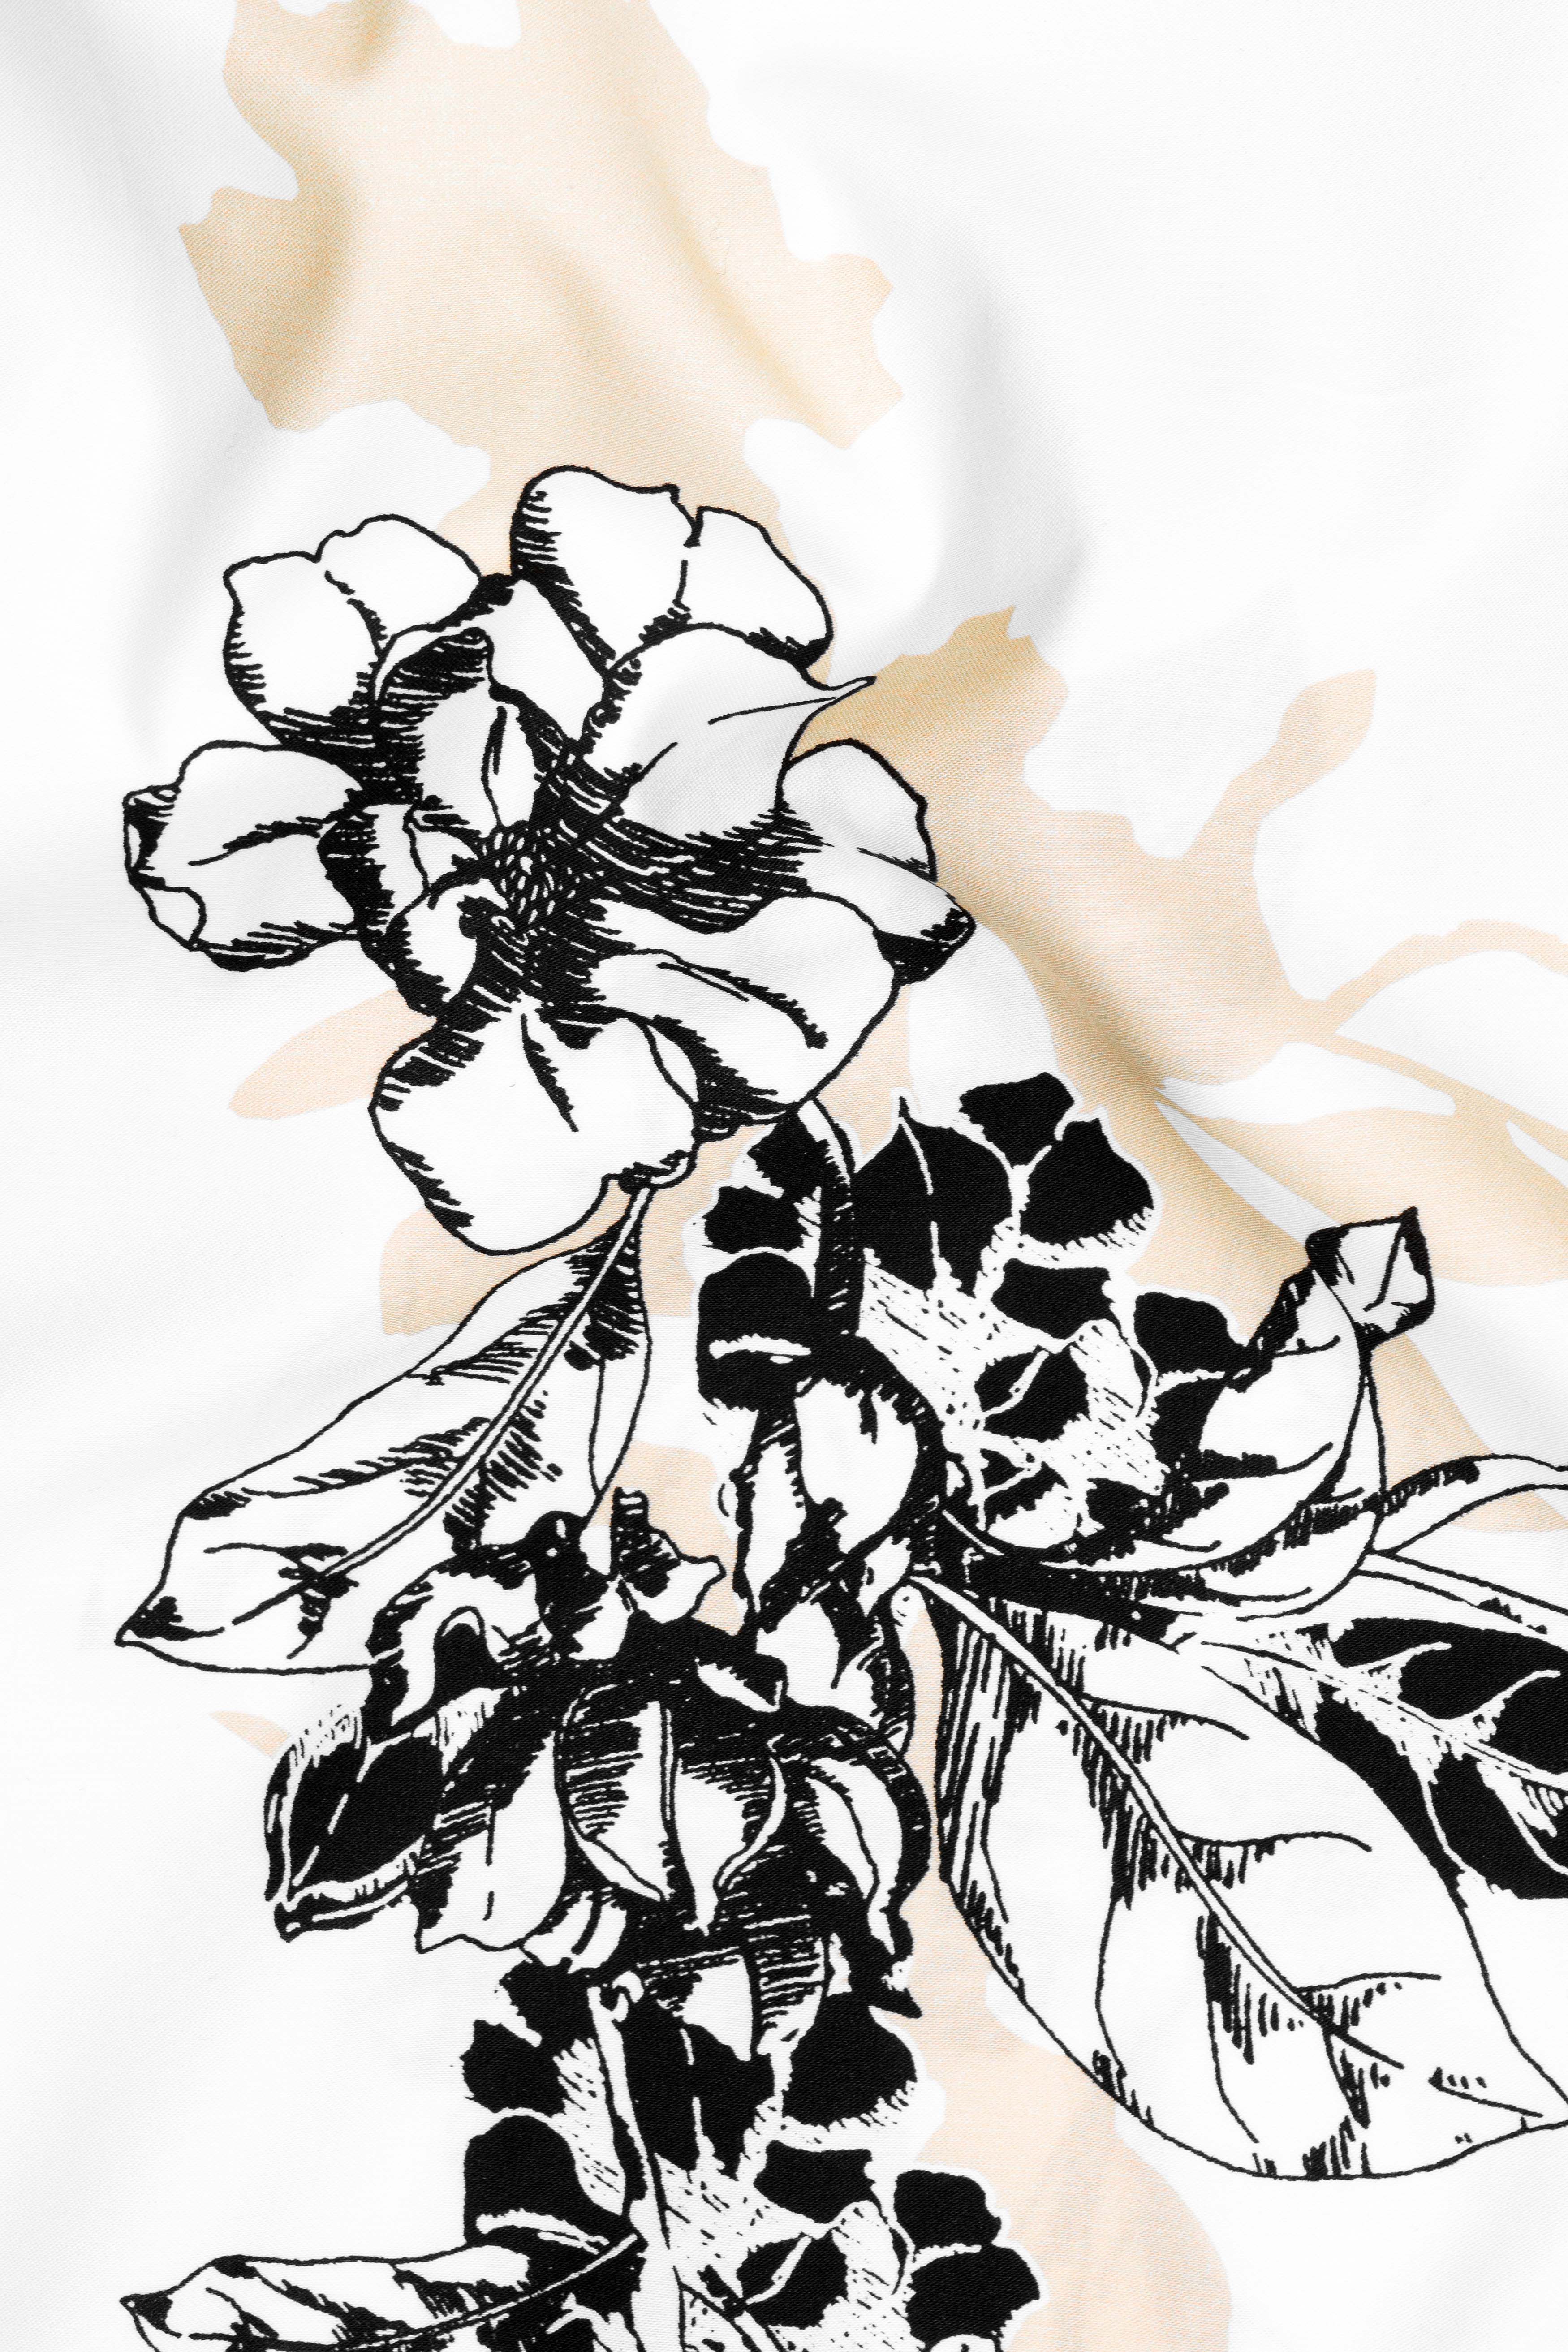 Bright White Flower Print Subtle Sheen Super Soft Premium Cotton Kurta Shirt